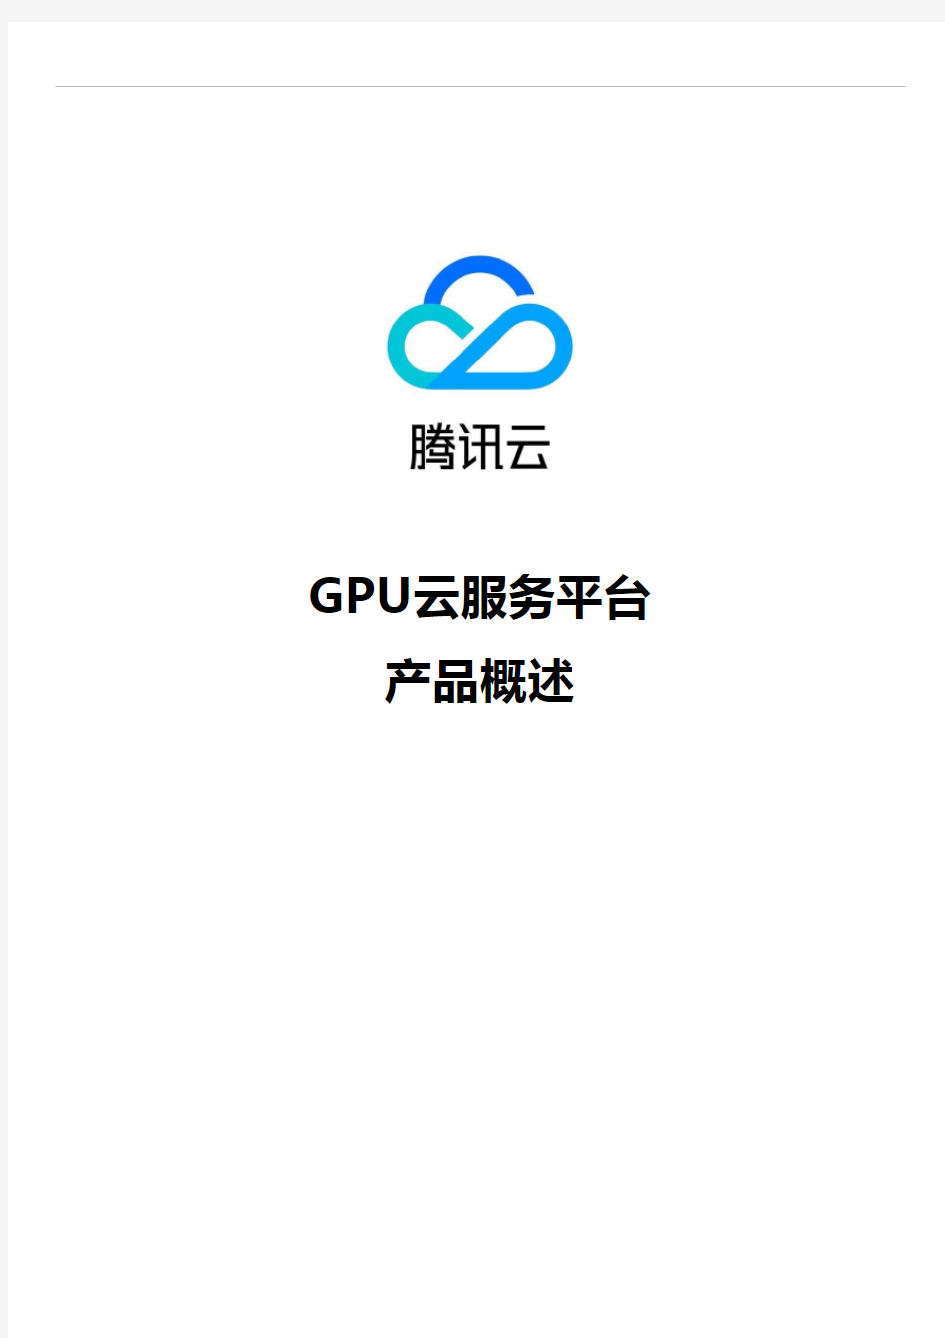 腾讯云-GPU云服务平台概述